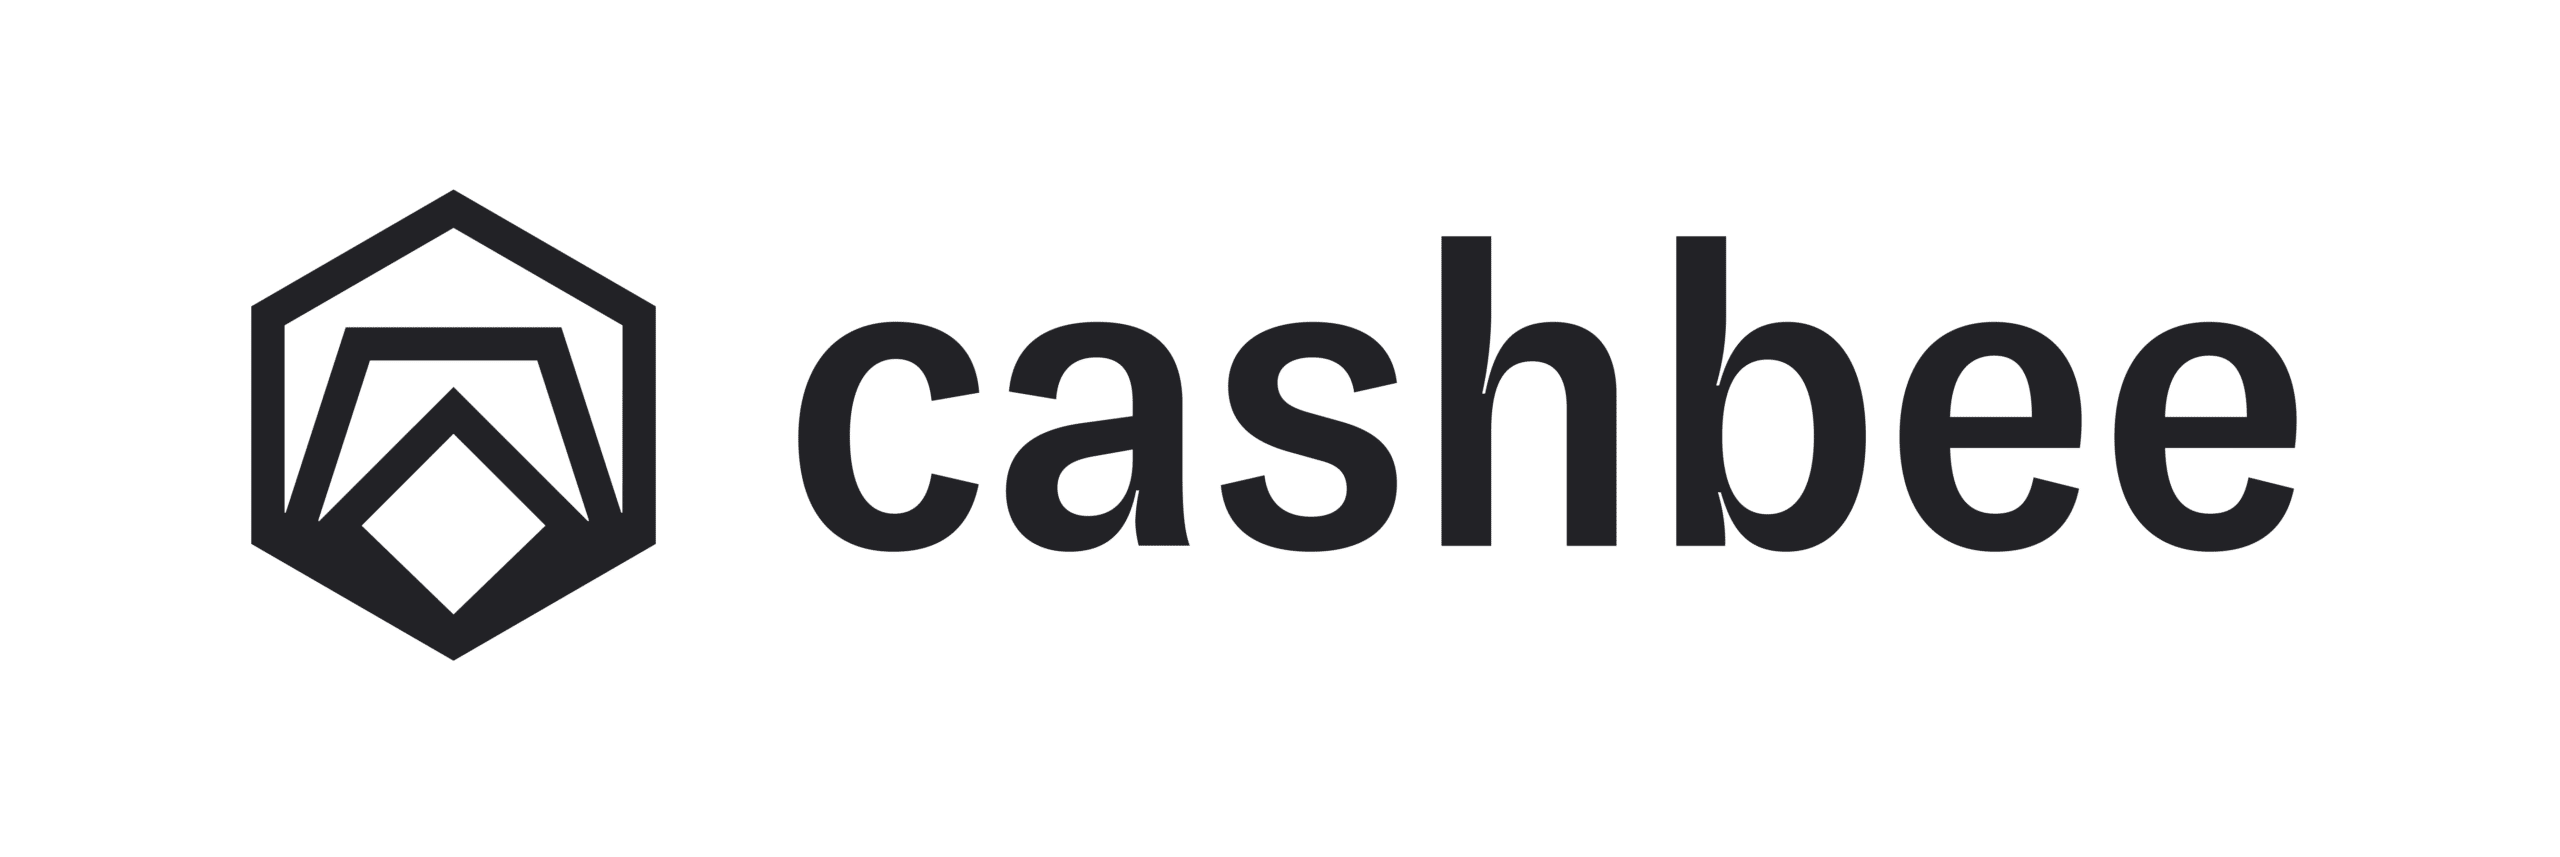 Cashbee : L’épargne pour les indépendants